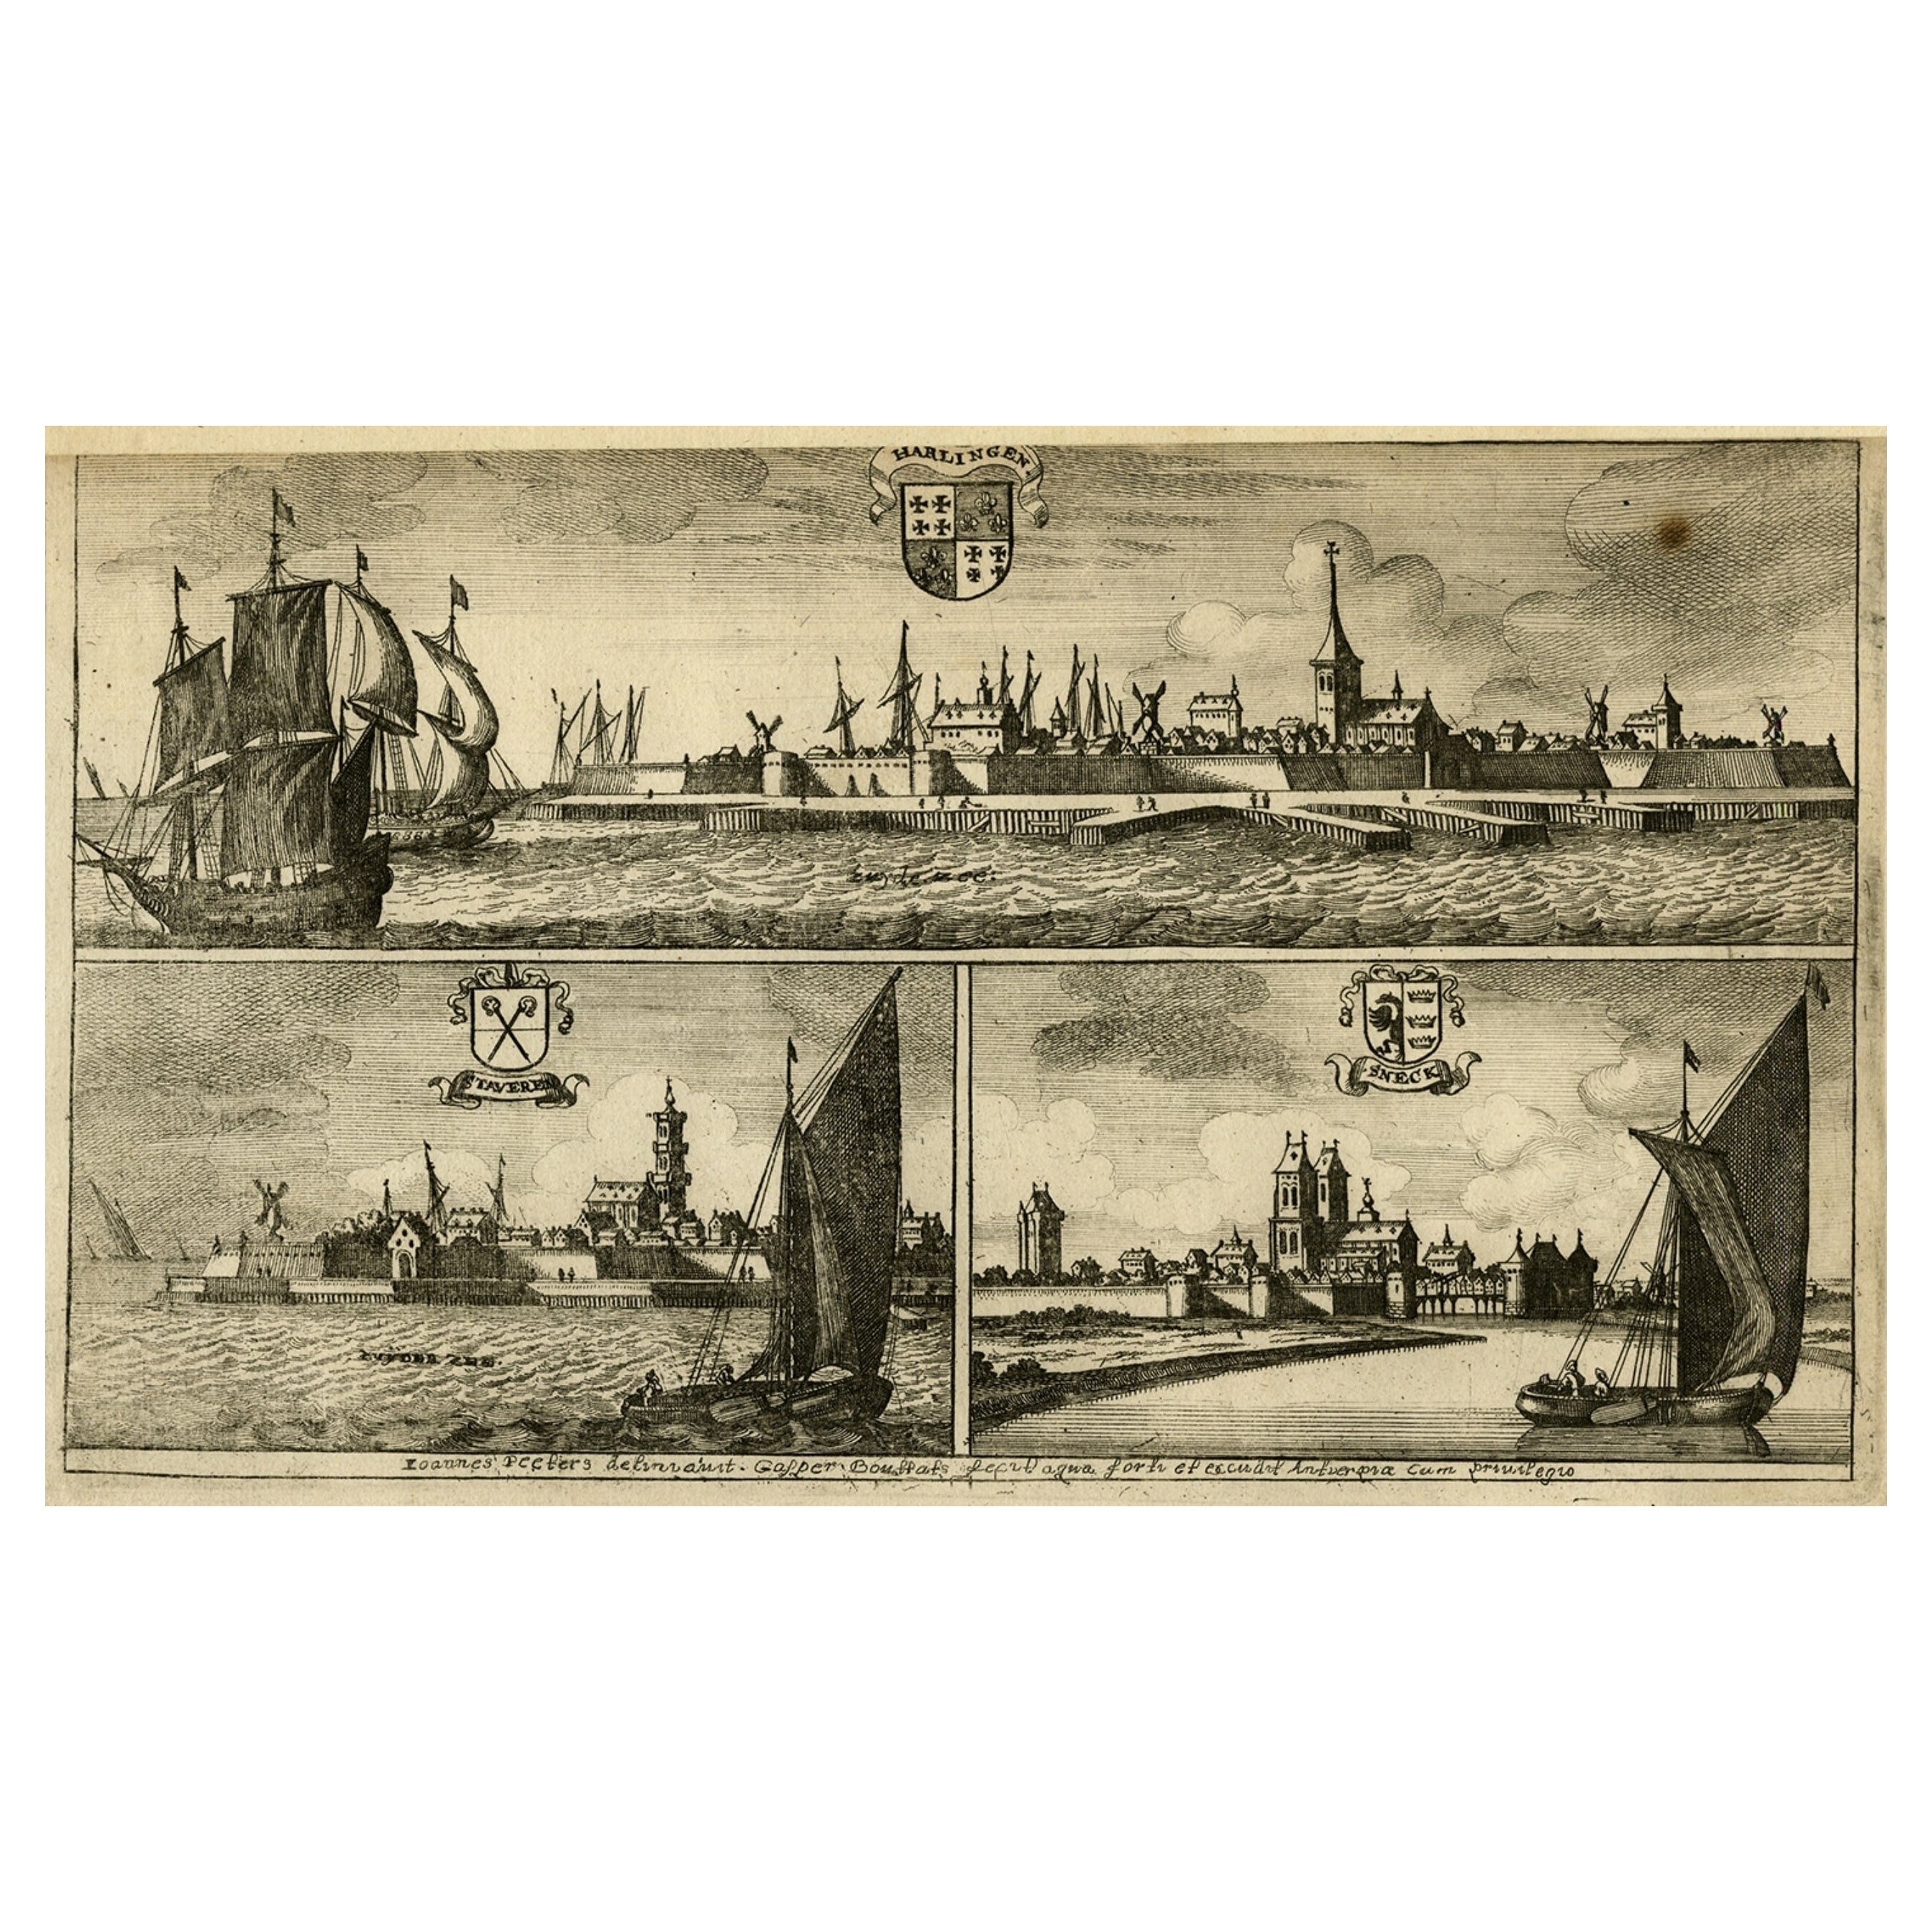 Antique Print of Harlingen, Stavoren and Sneek in Friesland, 1680